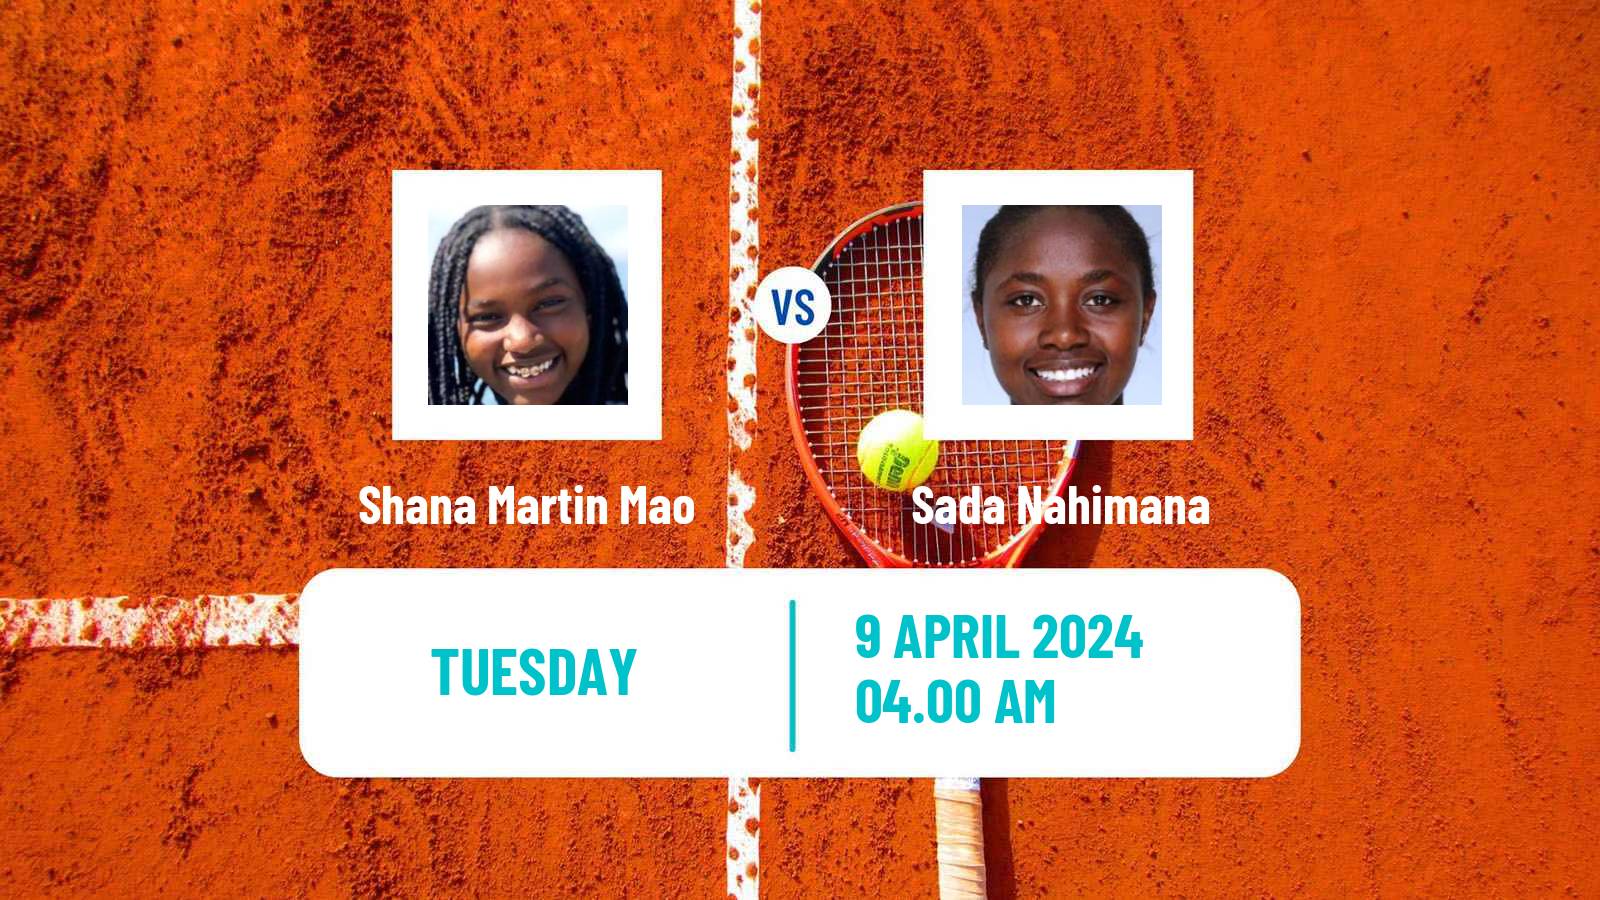 Tennis ITF W35 Bujumbura 2 Women Shana Martin Mao - Sada Nahimana